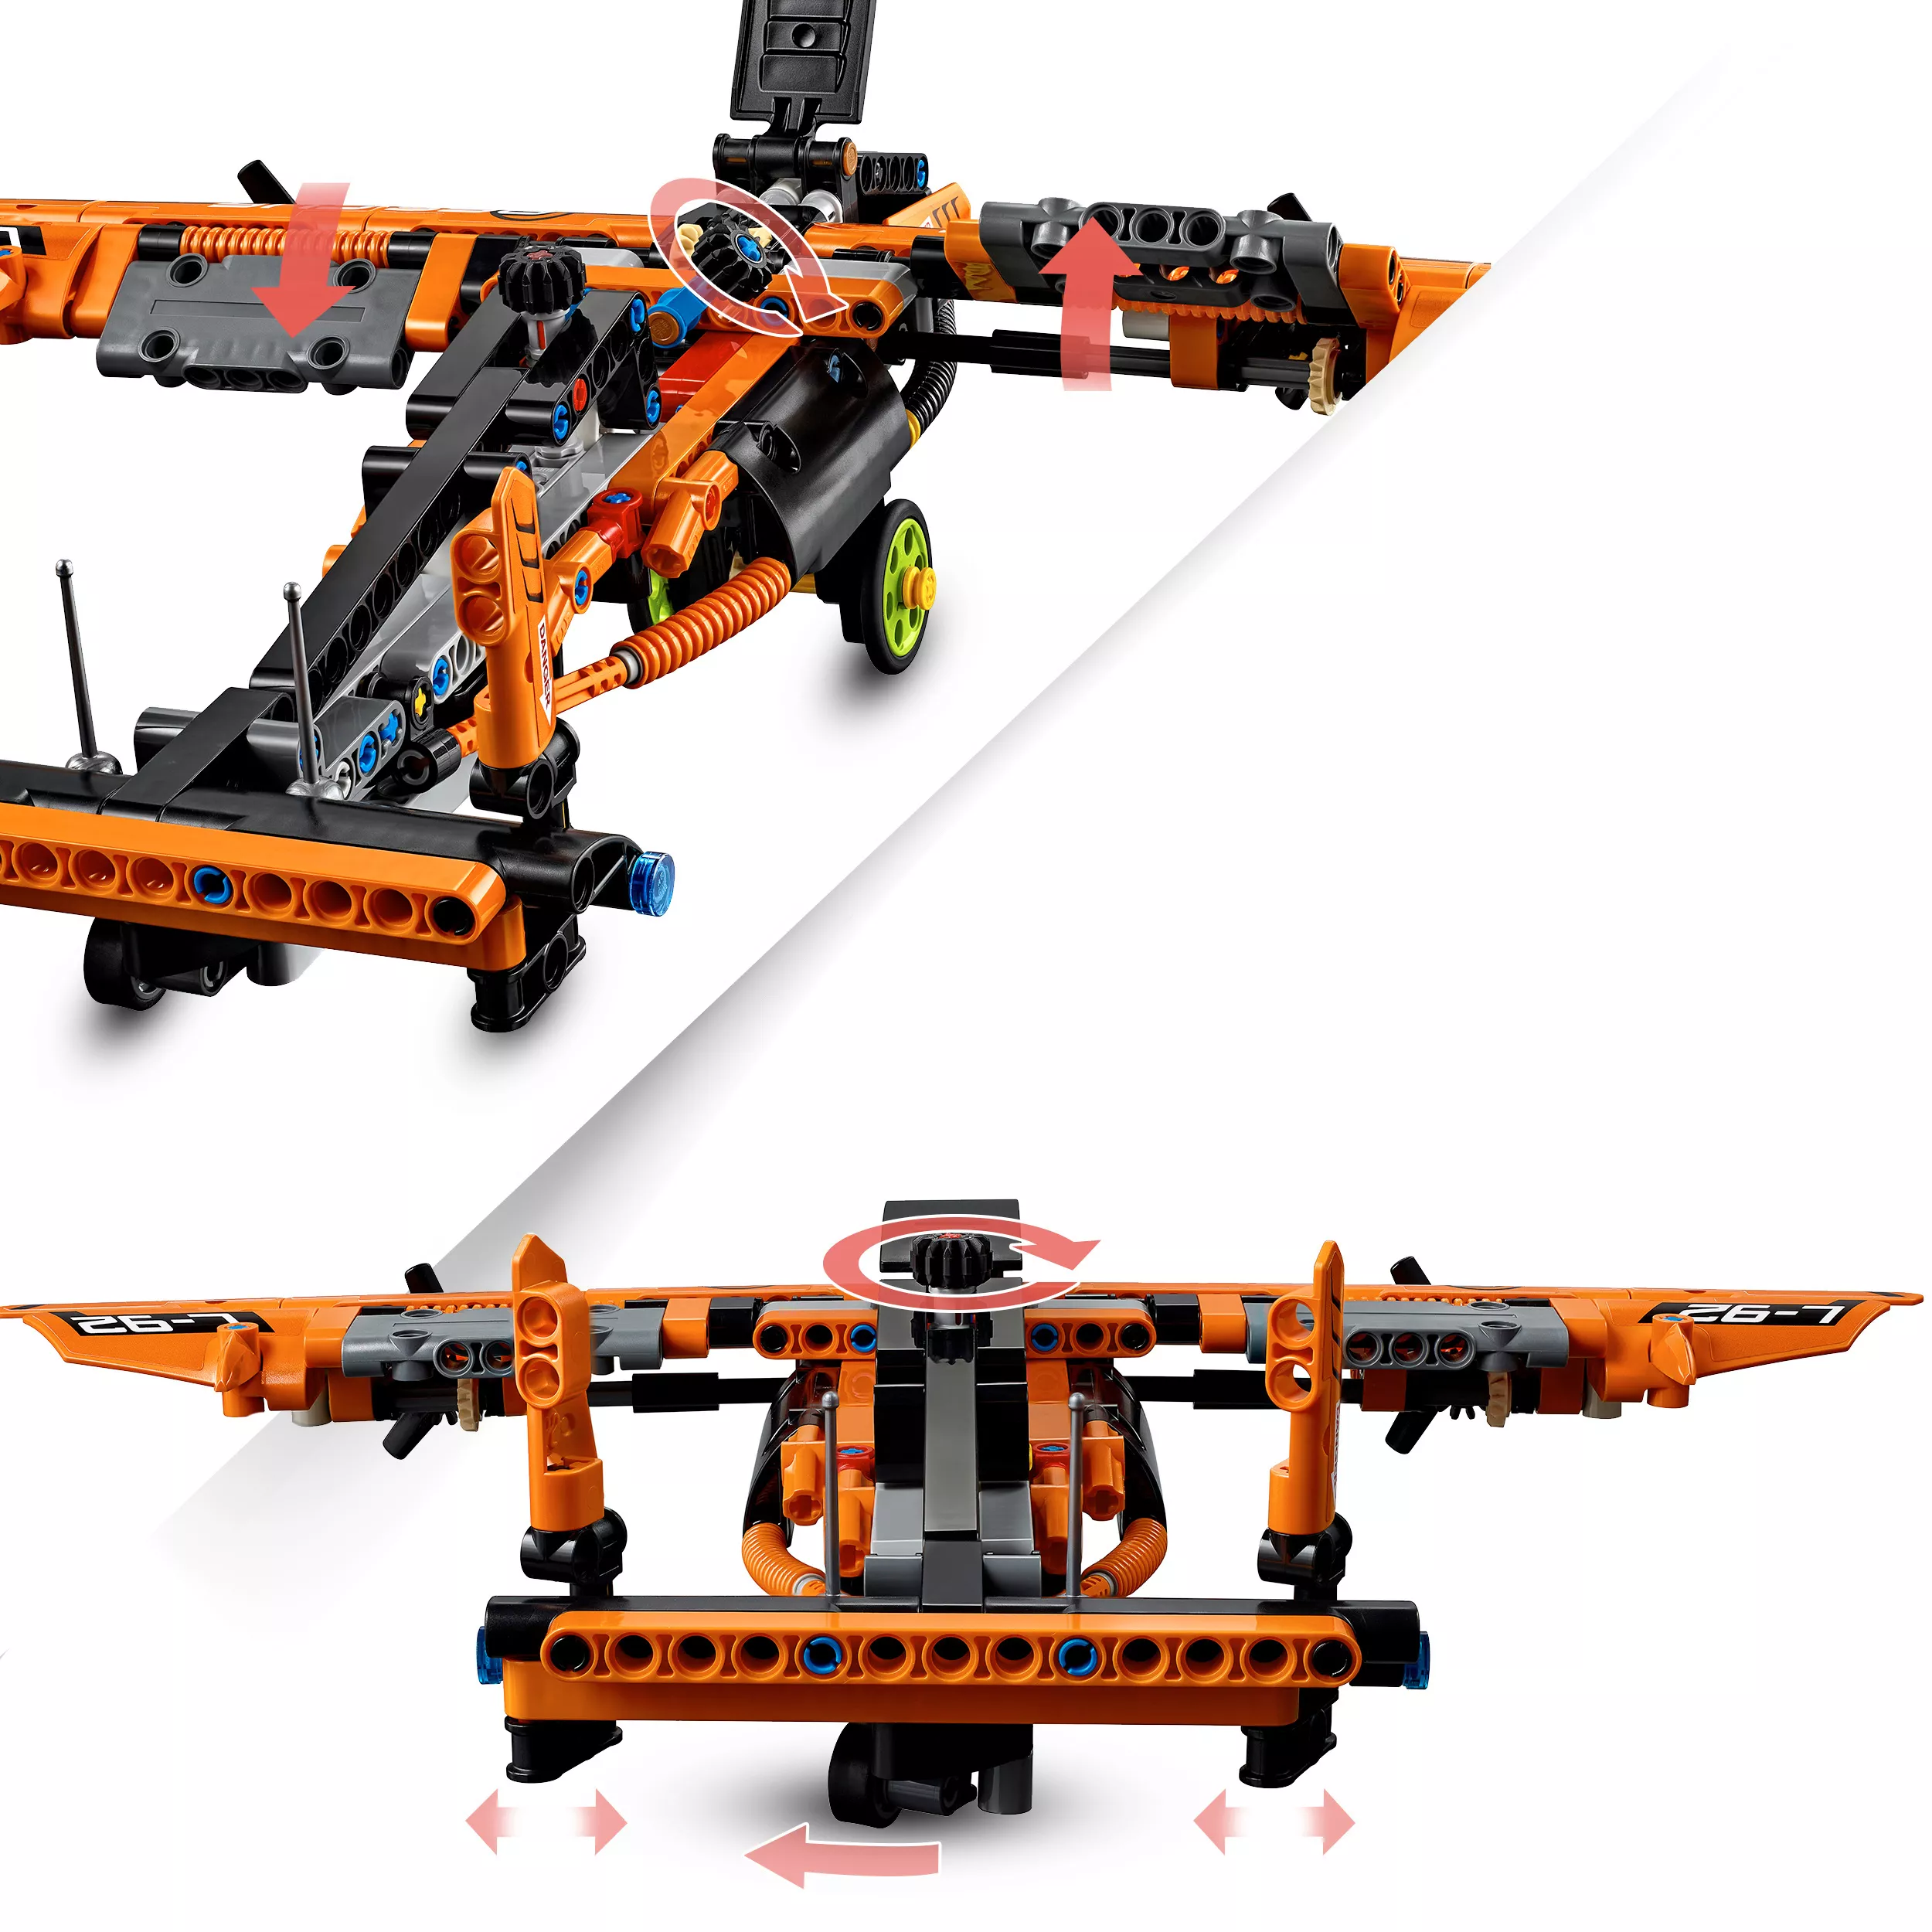 LEGO Technic Luftkissenboot für Rettungseinsätze